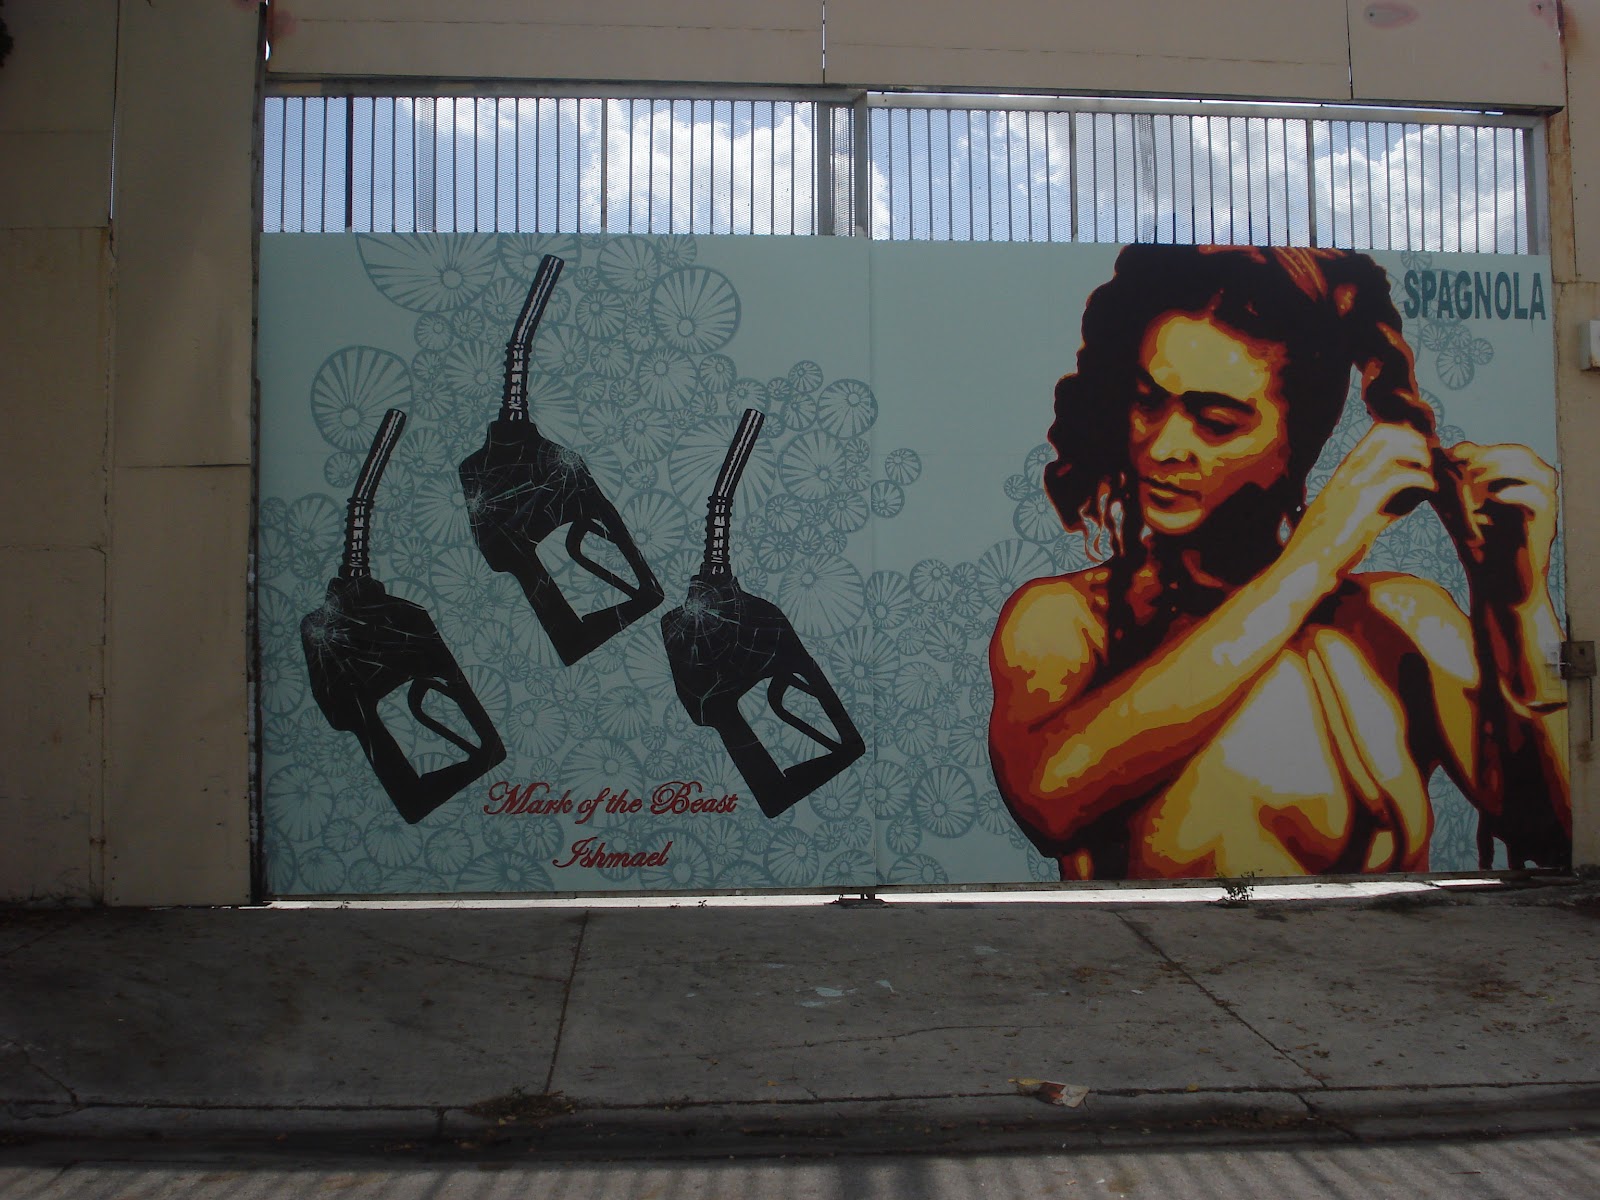 Kiwi S Angels Asa Engstrom Evokes Frida Kahlo In Dv Mode By